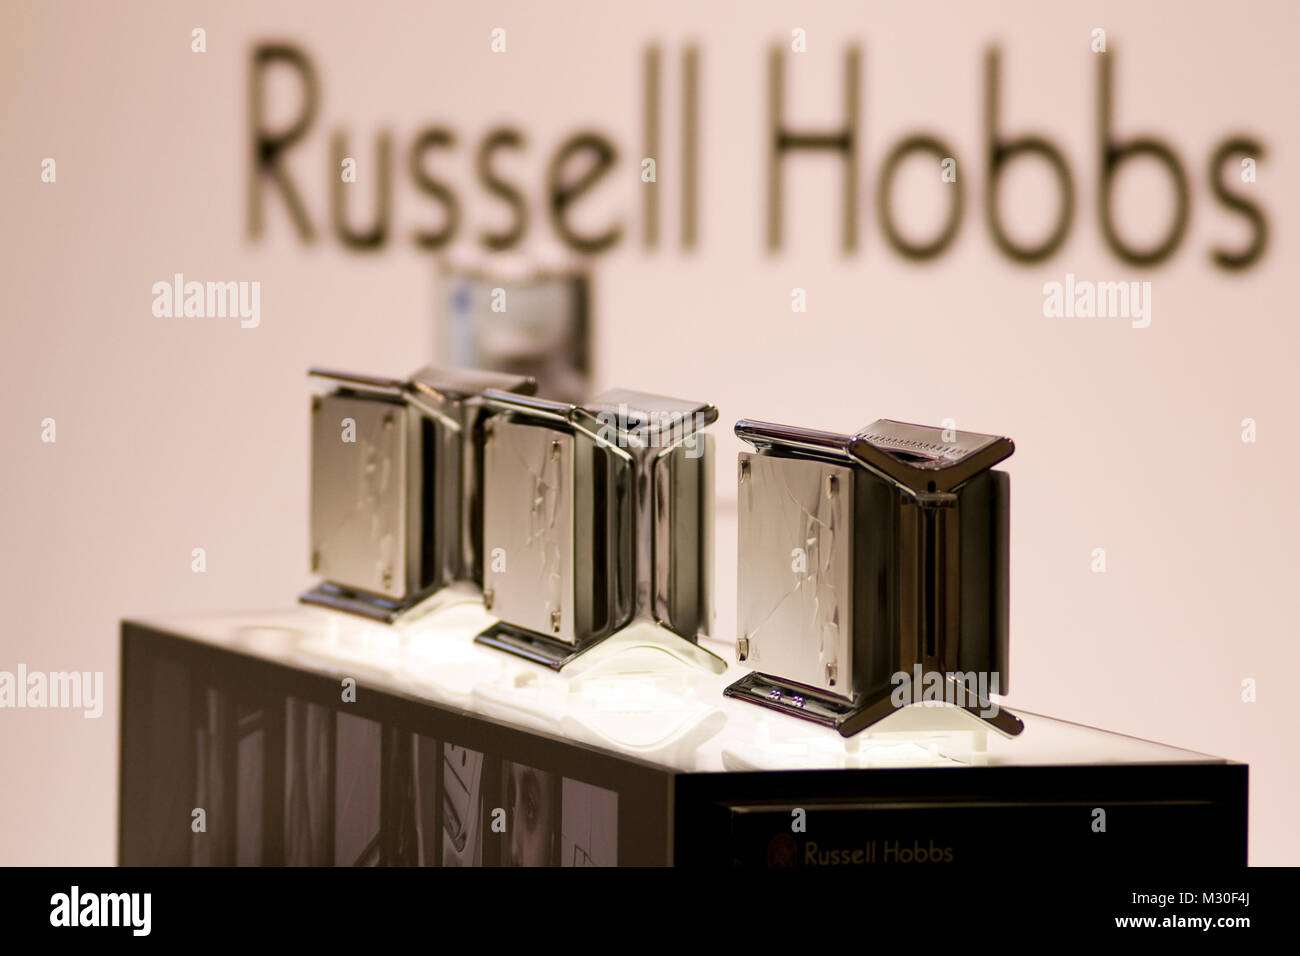 Russell Hobbs Elektro Geräte auf der Internationalen Funkausstellung 2009 in Berlin Stock Photo